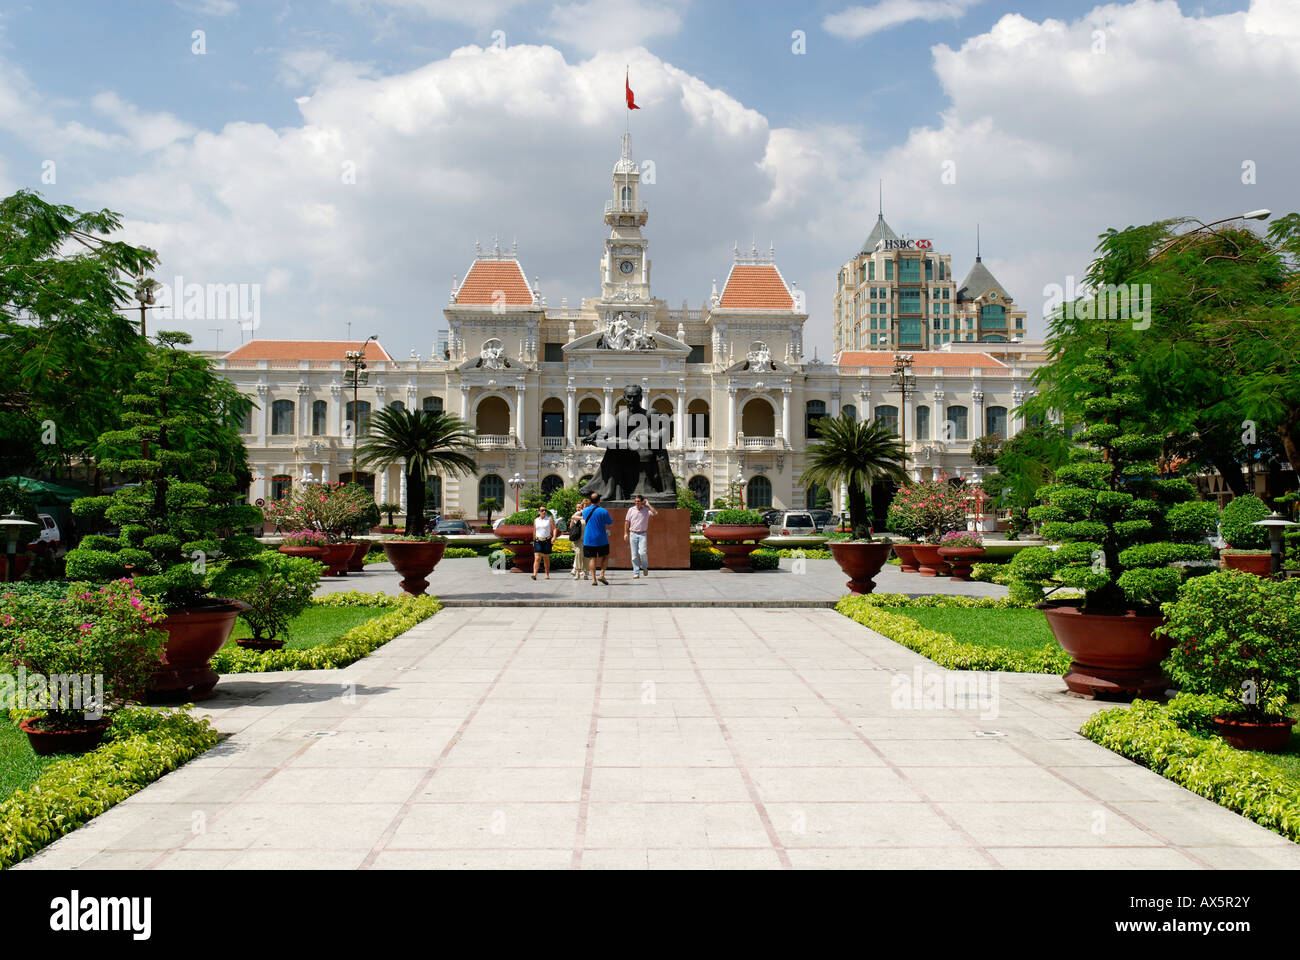 Historic city hall of Saigon, Ho Chi Minh City, Vietnam Stock Photo